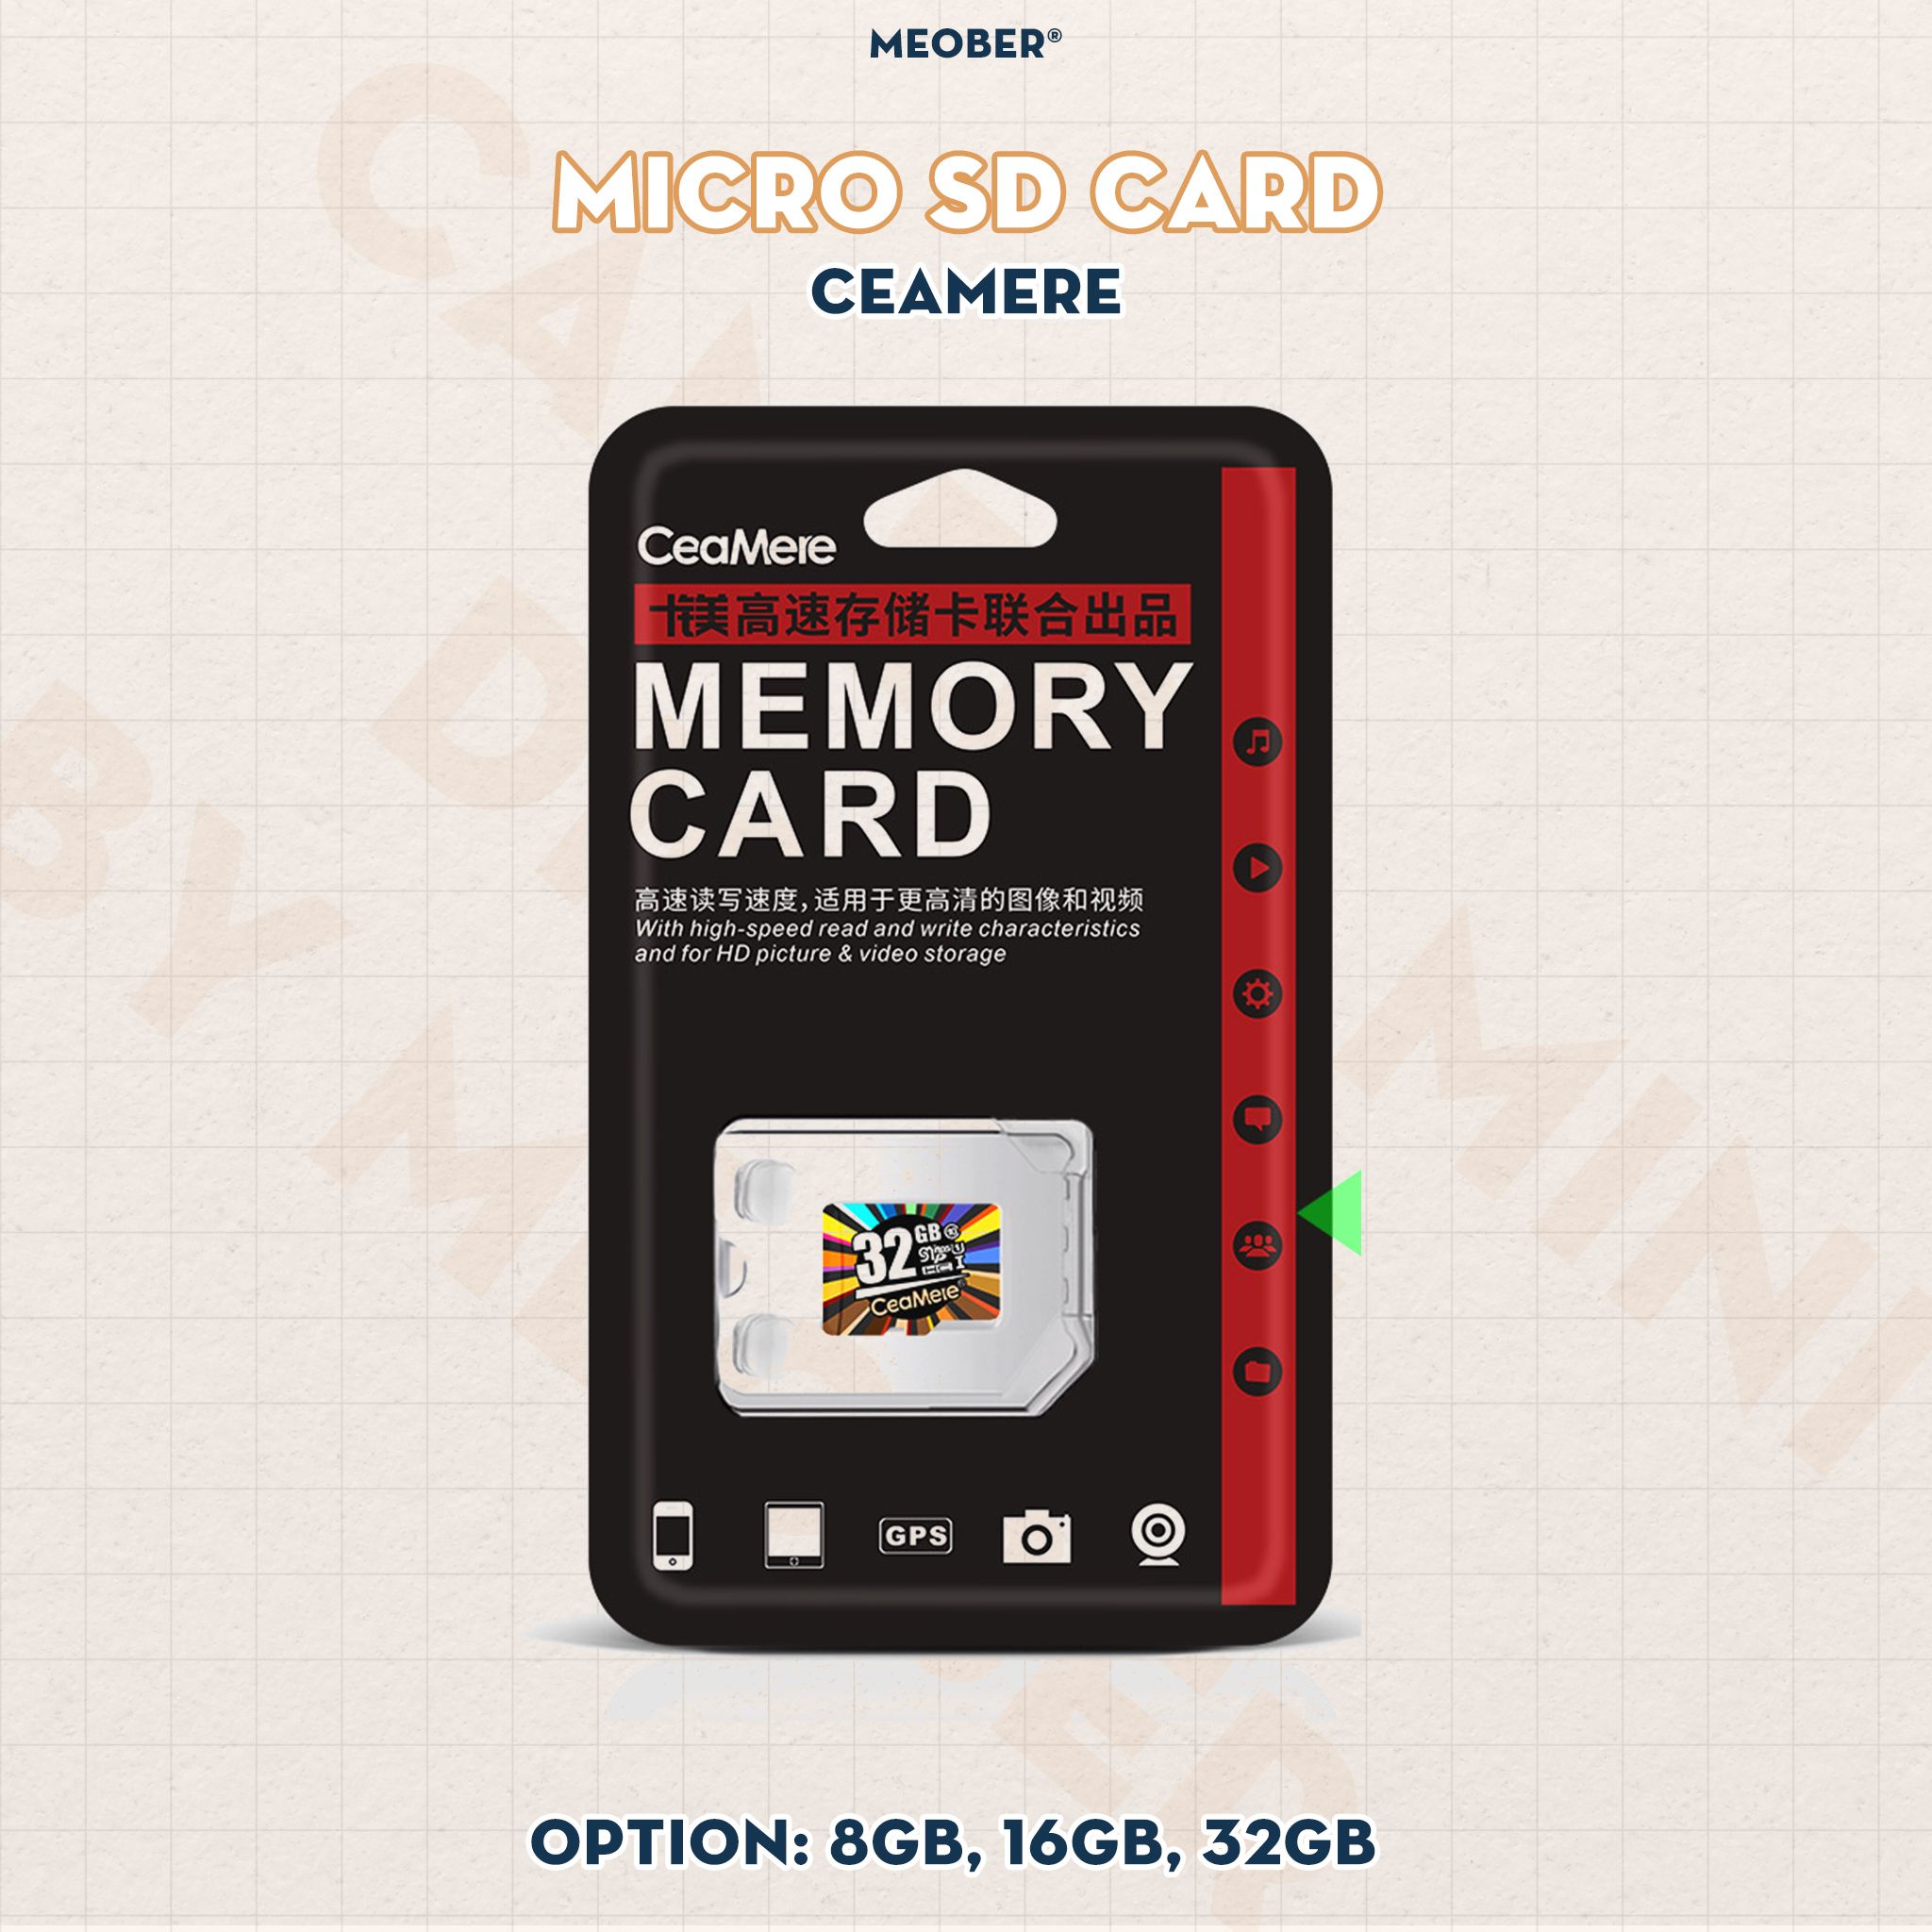  Thẻ nhớ SD & MicroSD Elite Pro tốc độ cao by MèoBer - dành cho máy ảnh kĩ thuật số, camera vintage, smartphone v.v 